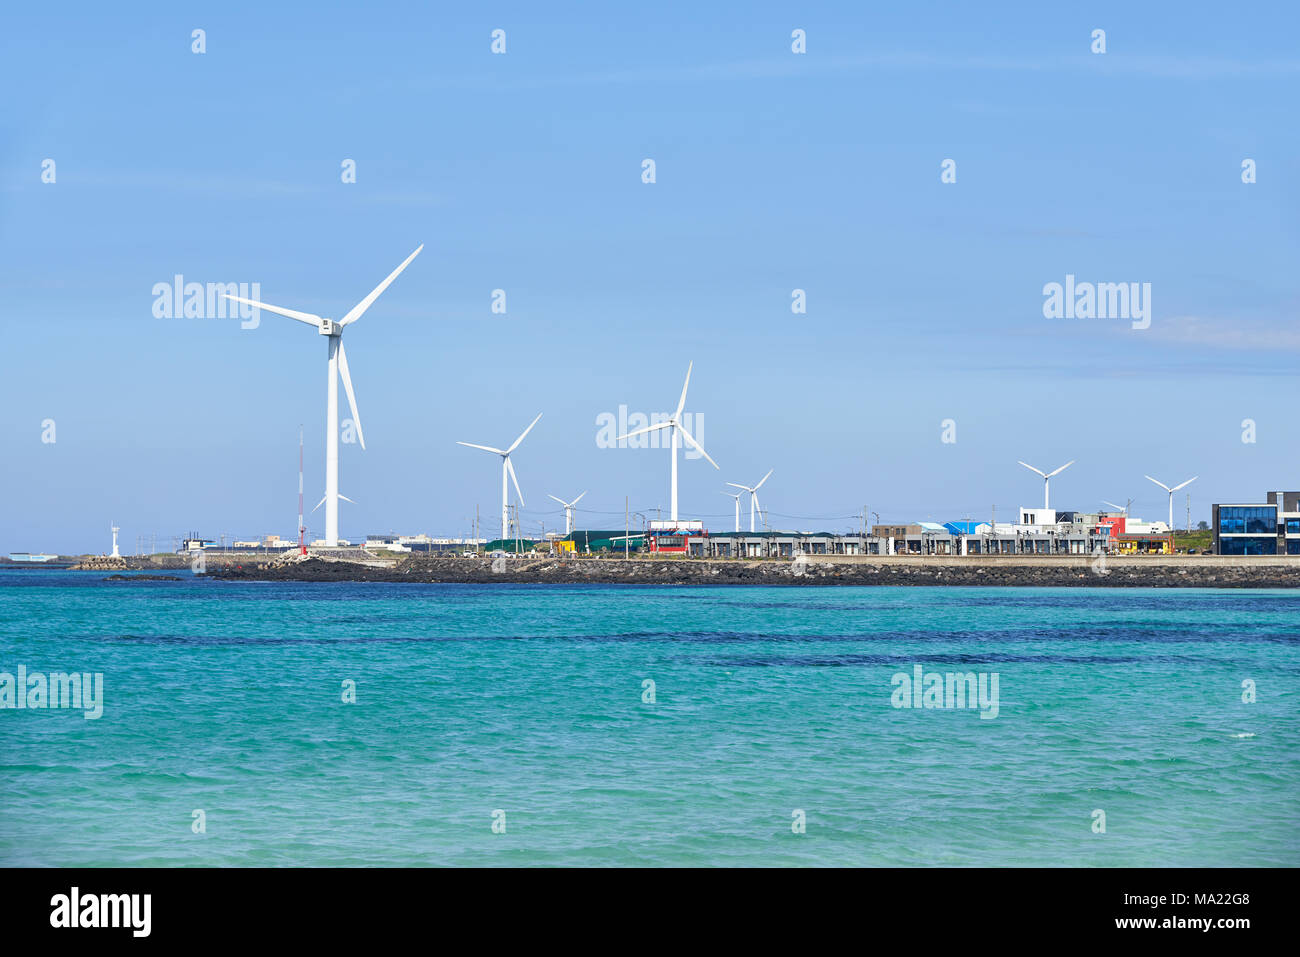 Landschaft der Küste mit Wind Generator in Woljeong-ri, Jeju, Korea. Insel Jeju ist bekannt für die schöne Natur und Landschaften der Welt. Stockfoto